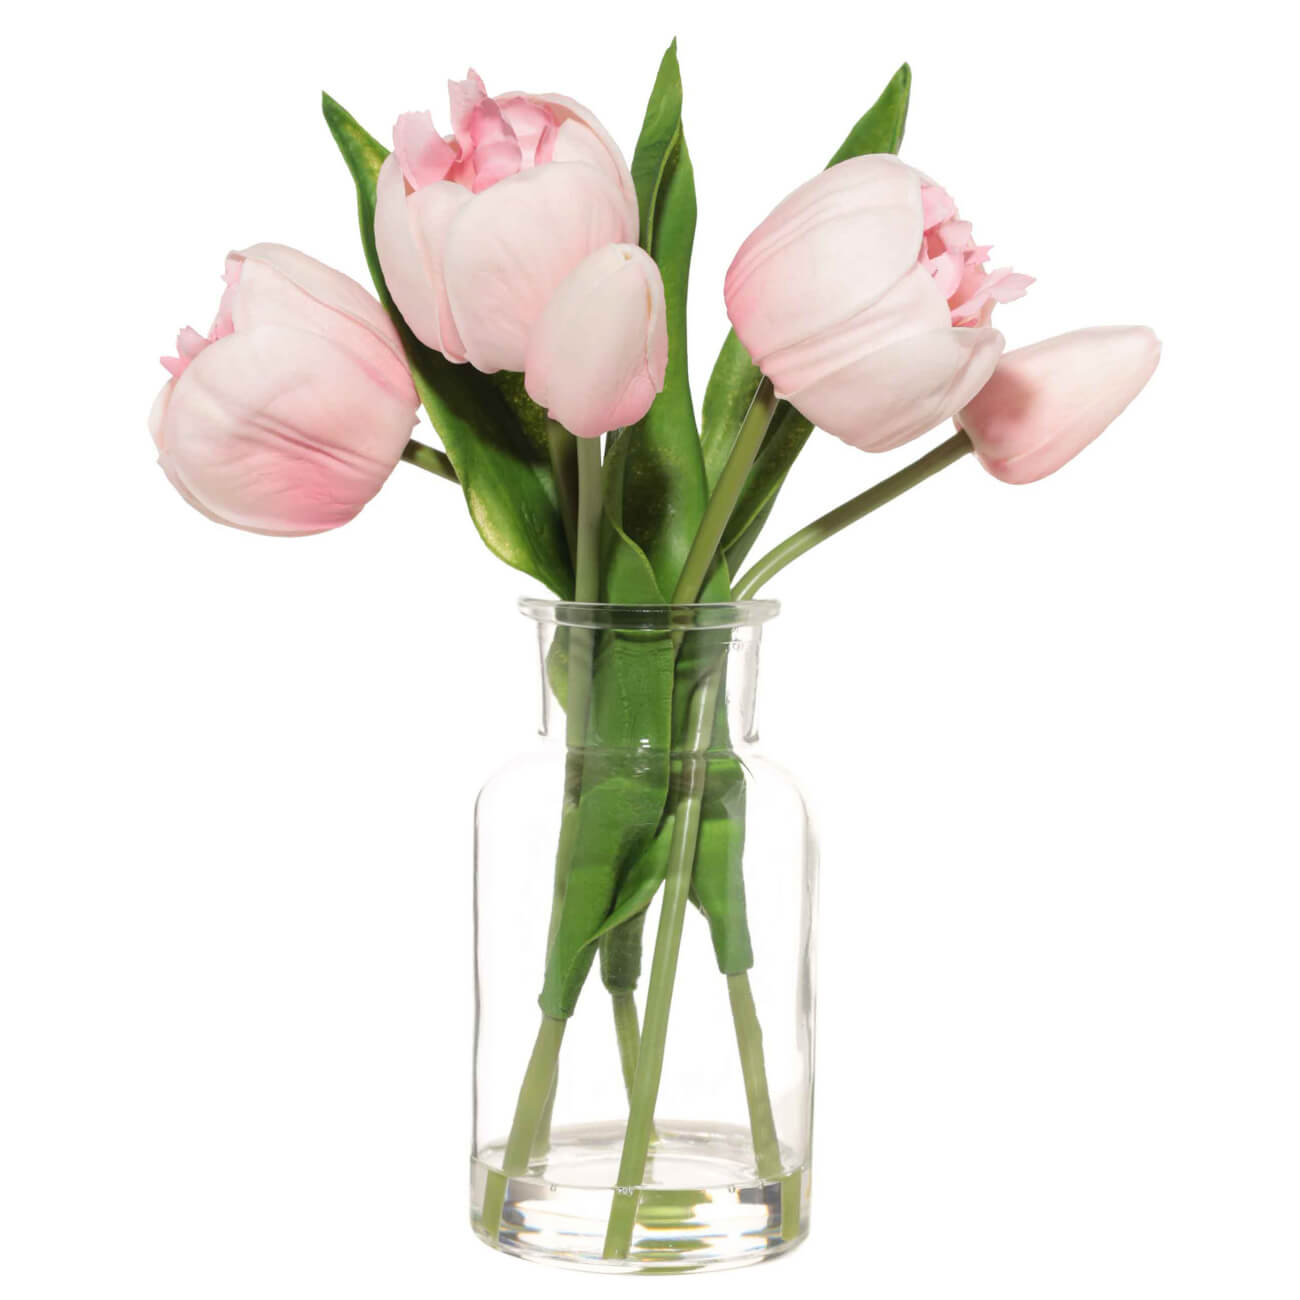 Букет искусственный, 21 см, в вазе, полиуретан/стекло, Розовые тюльпаны, Tulip garden букет